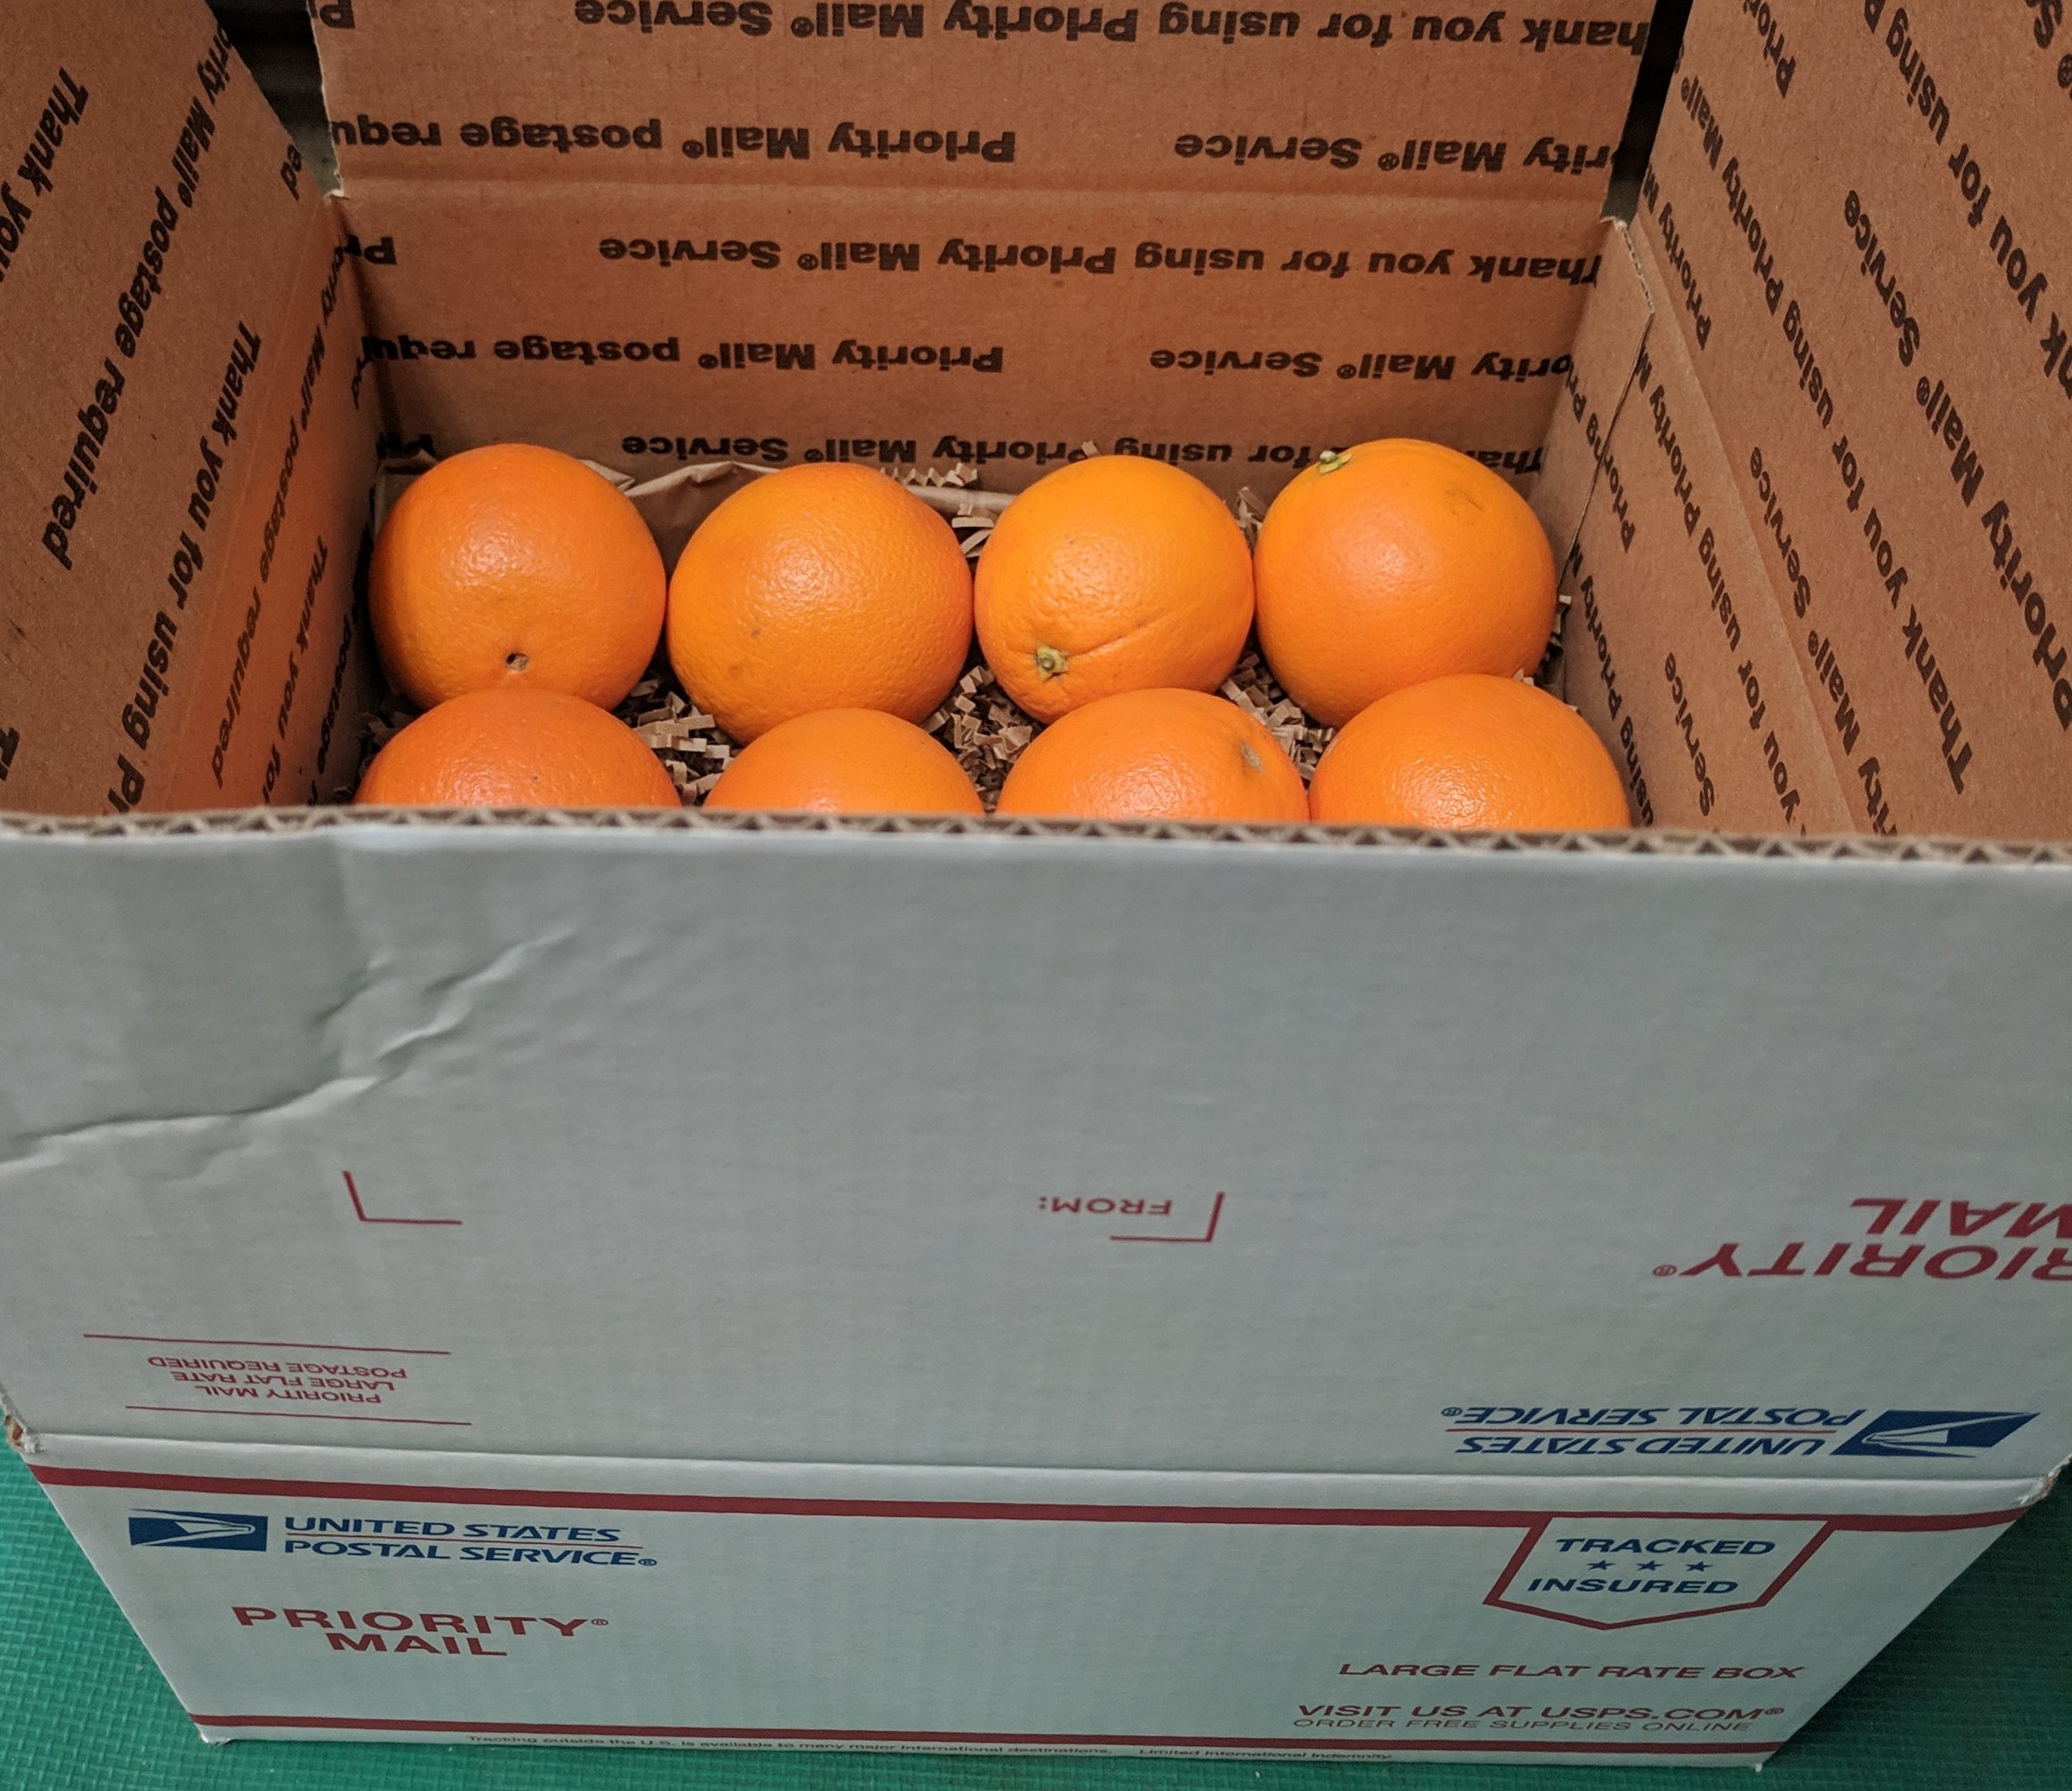 Order Organic Navel Oranges